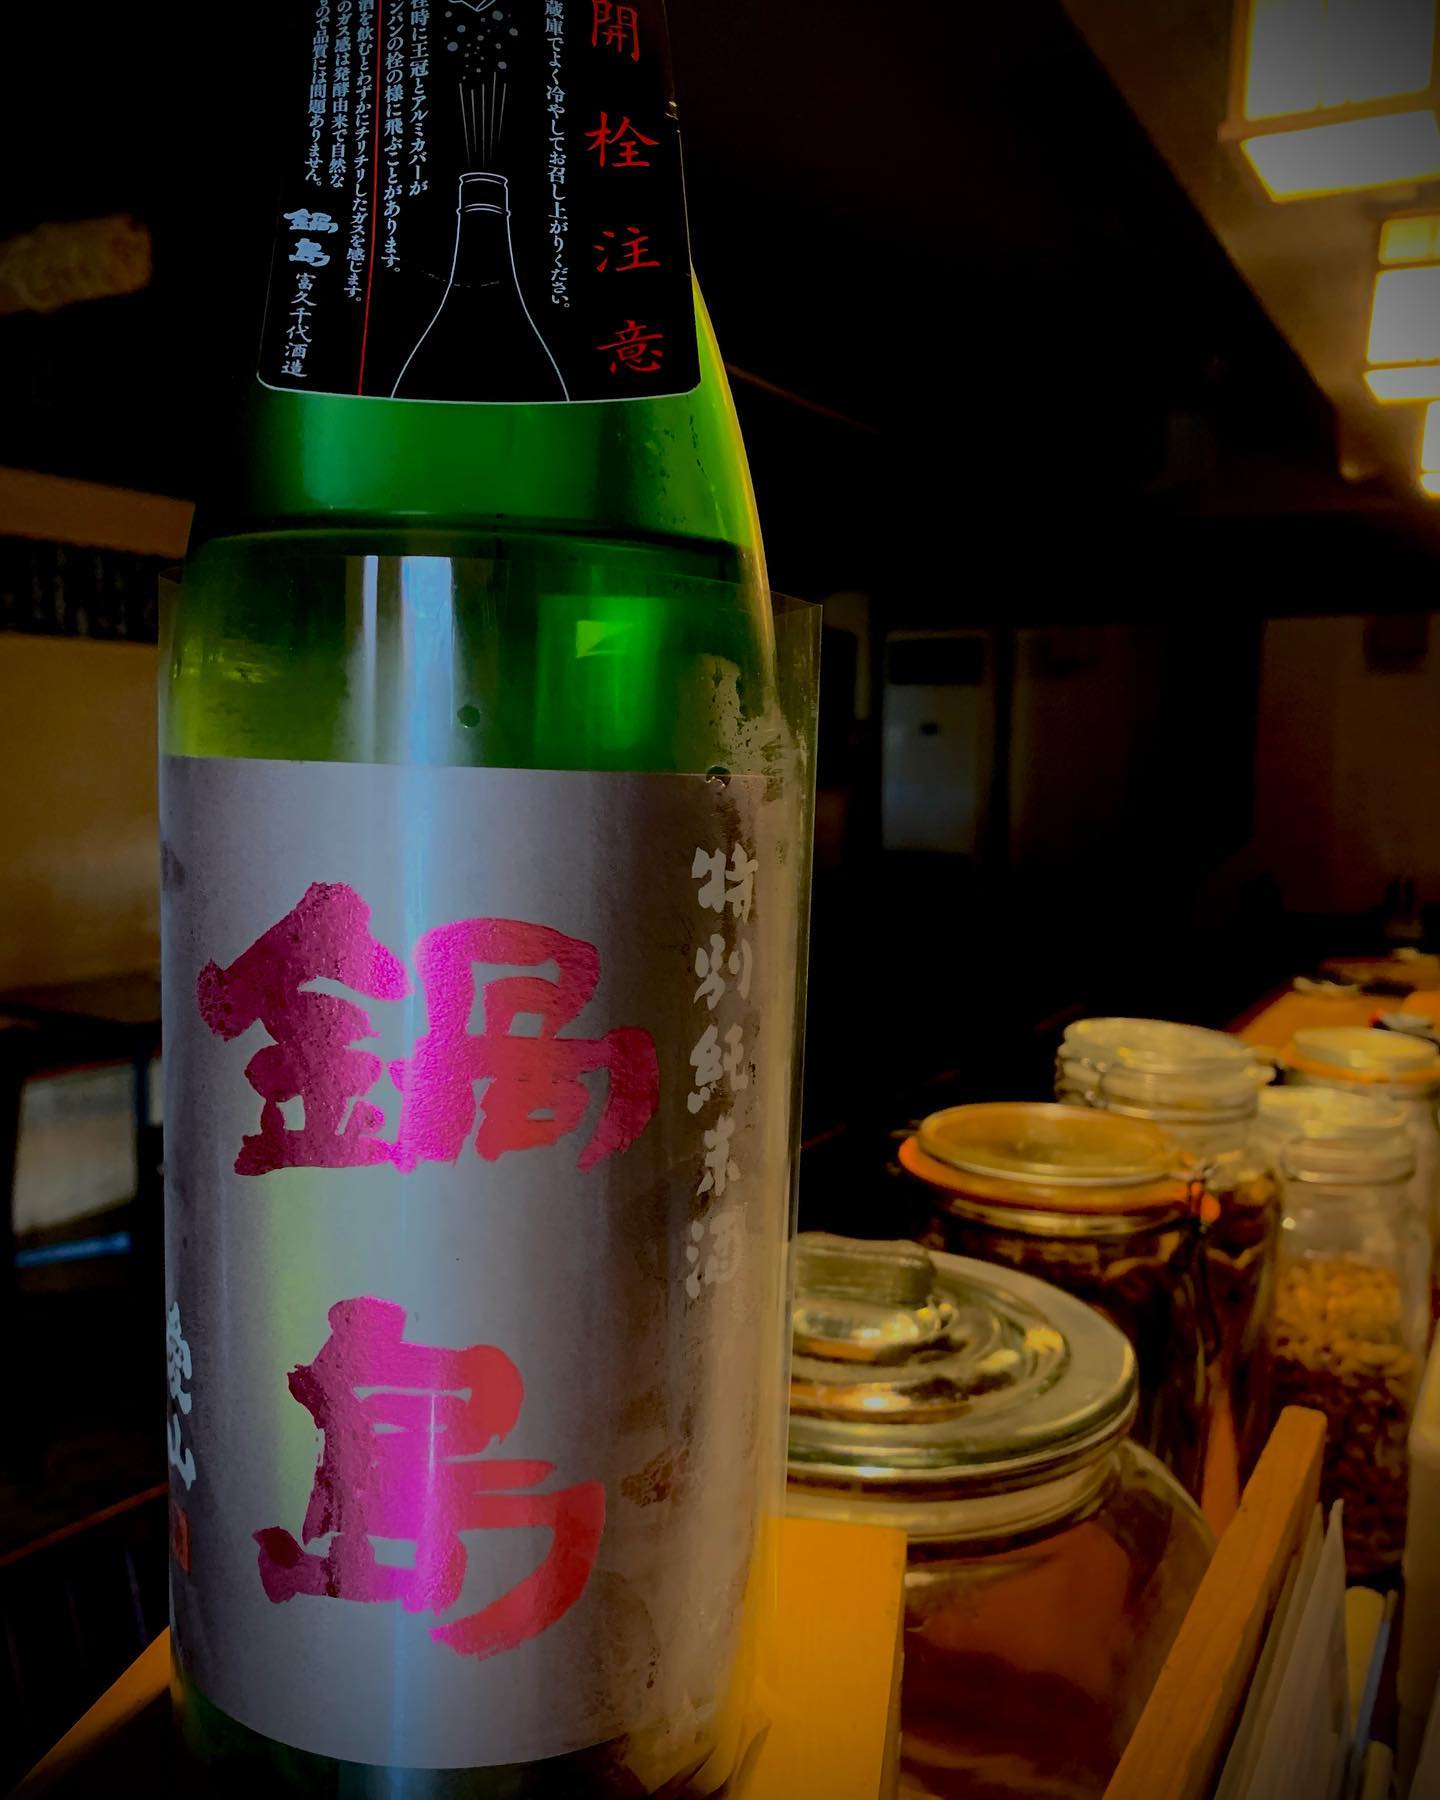 本日の日本酒紹介
｢鍋島｣
こちらの鍋島は酒米の愛山というお米をつかっており、甘くてジューシーな日本酒に仕上がりやすいお米となっております。
開栓するとフルーティーな香りが漂い、口当たりから喉越しまで一気にガス感で抜けていきます。でもしばらく経つと、深い甘みに少し苦味が出てきます。
 #